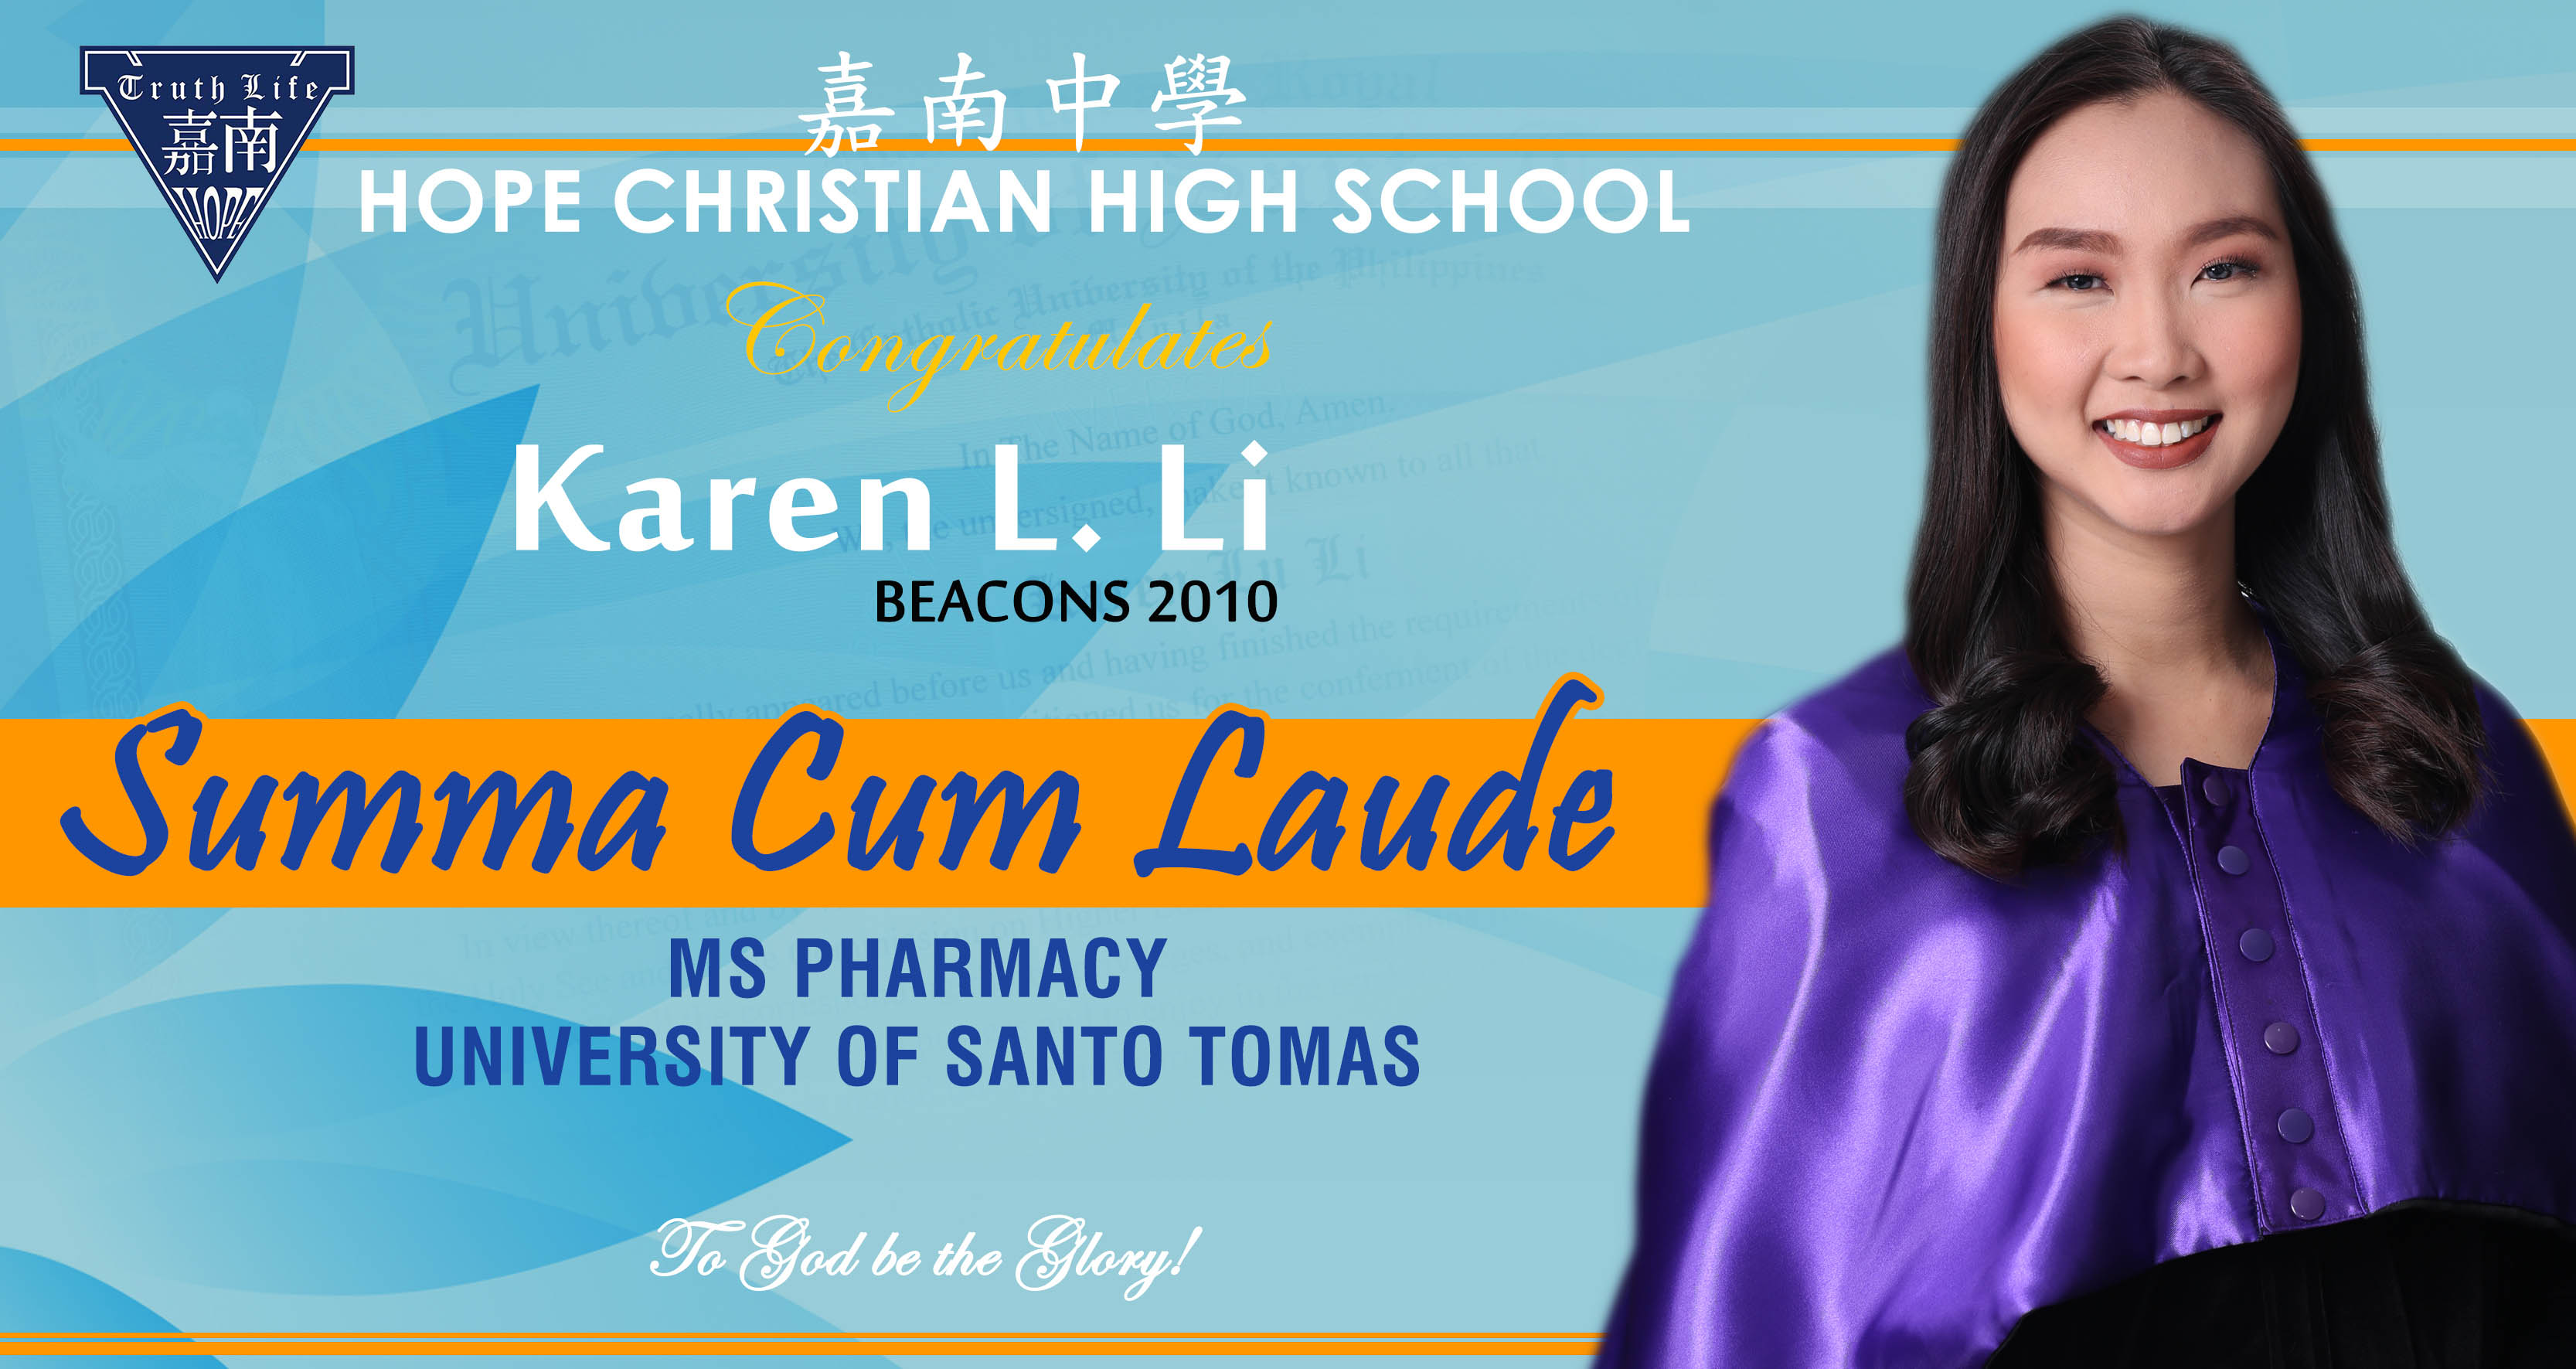 Karen L. Li, Summa Cum Laude - University of Sto.Tomas